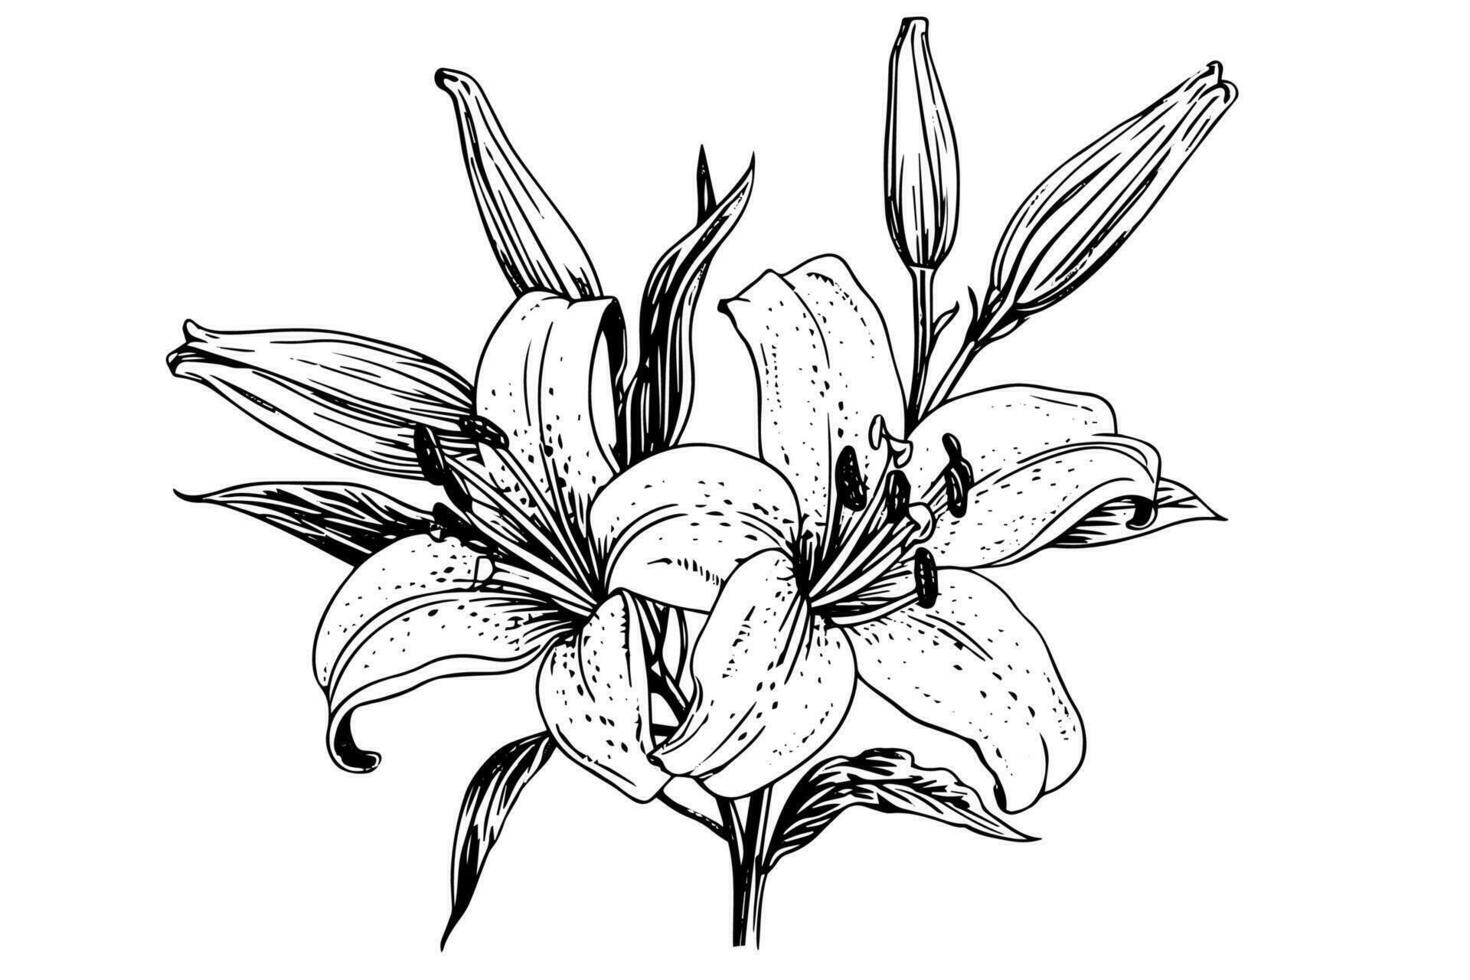 svartvit svart och vit bukett lilja isolerat på vit bakgrund. ritad för hand vektor illsutration.